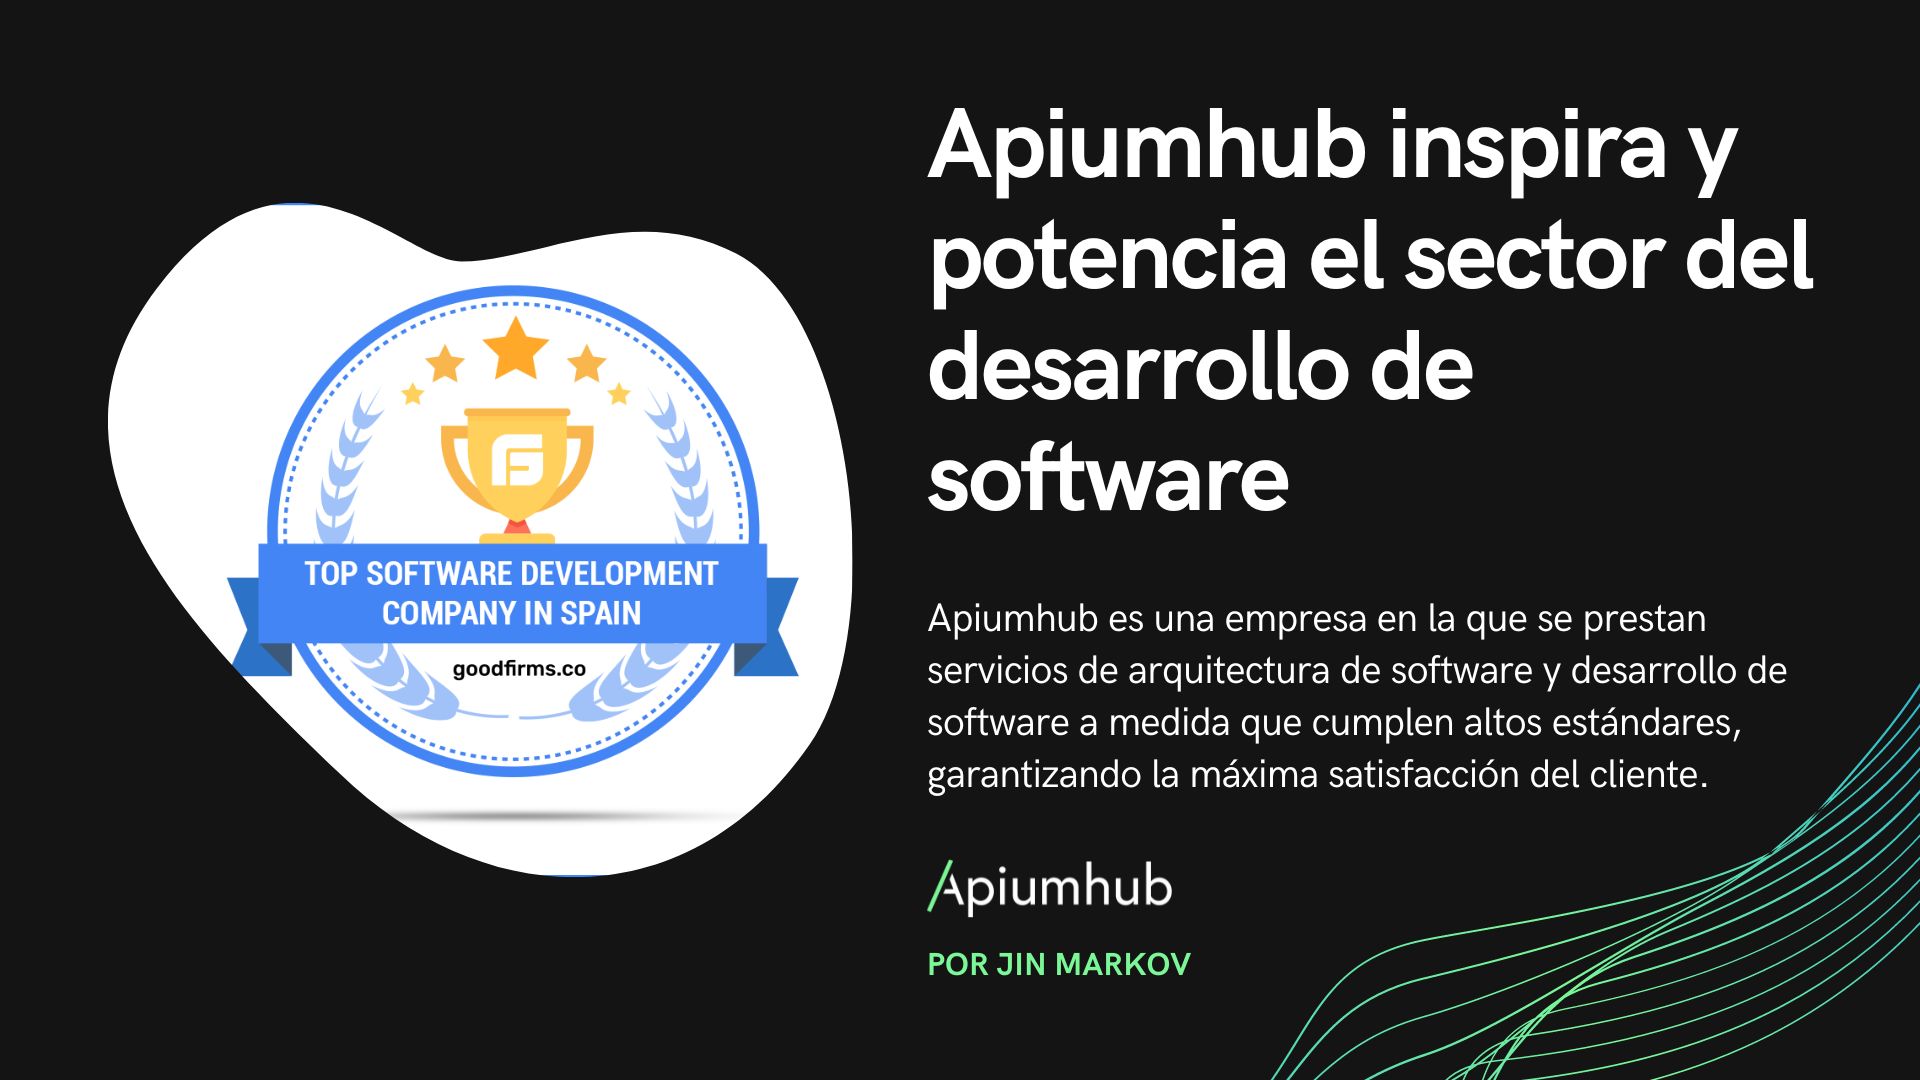 Apiumhub inspira y potencia el sector del desarrollo de software